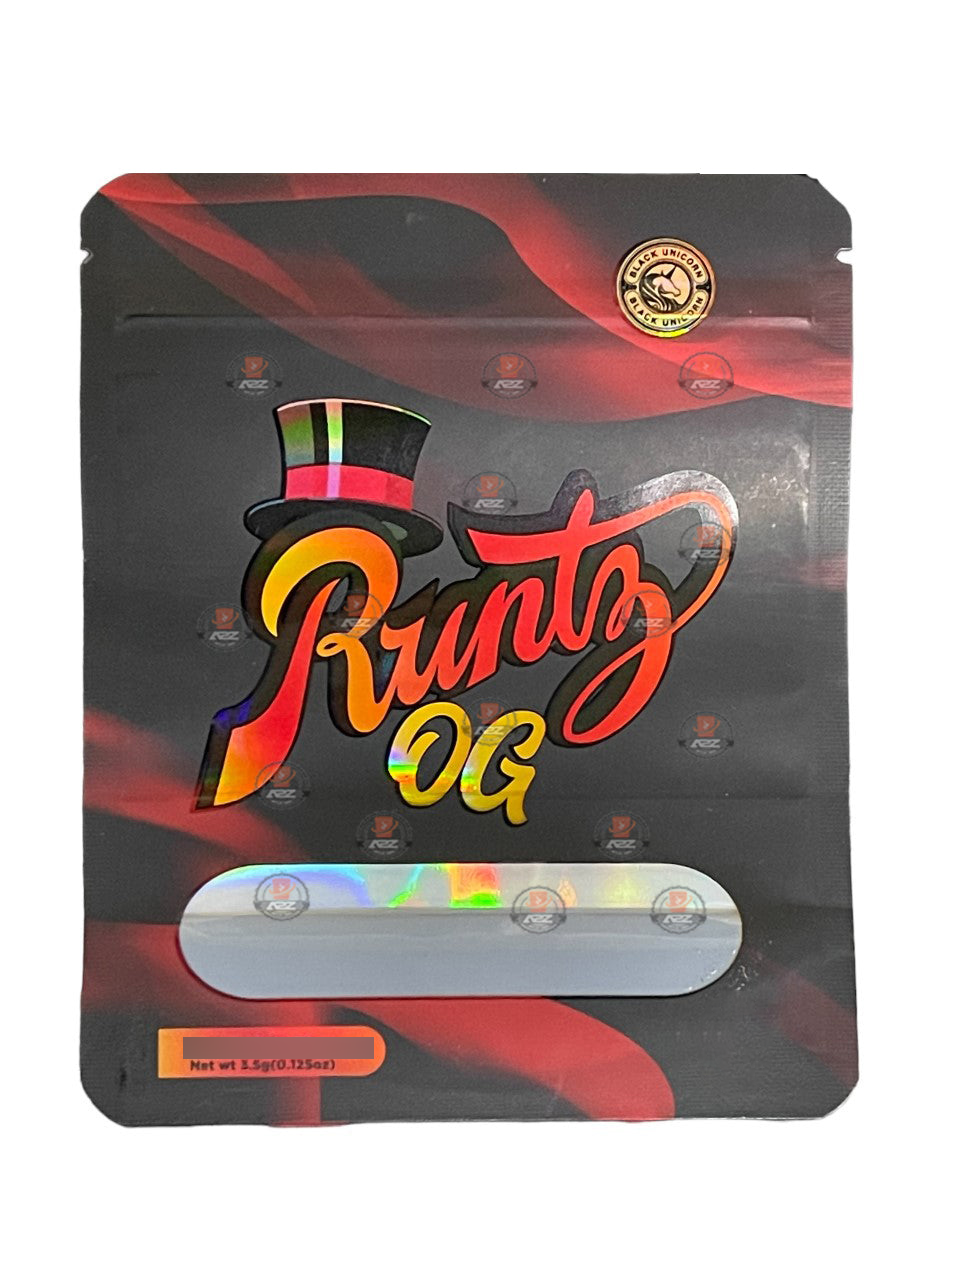 Runtz OG Holographic Mylar bag 3.5g - Black Unicorn - Packaging only